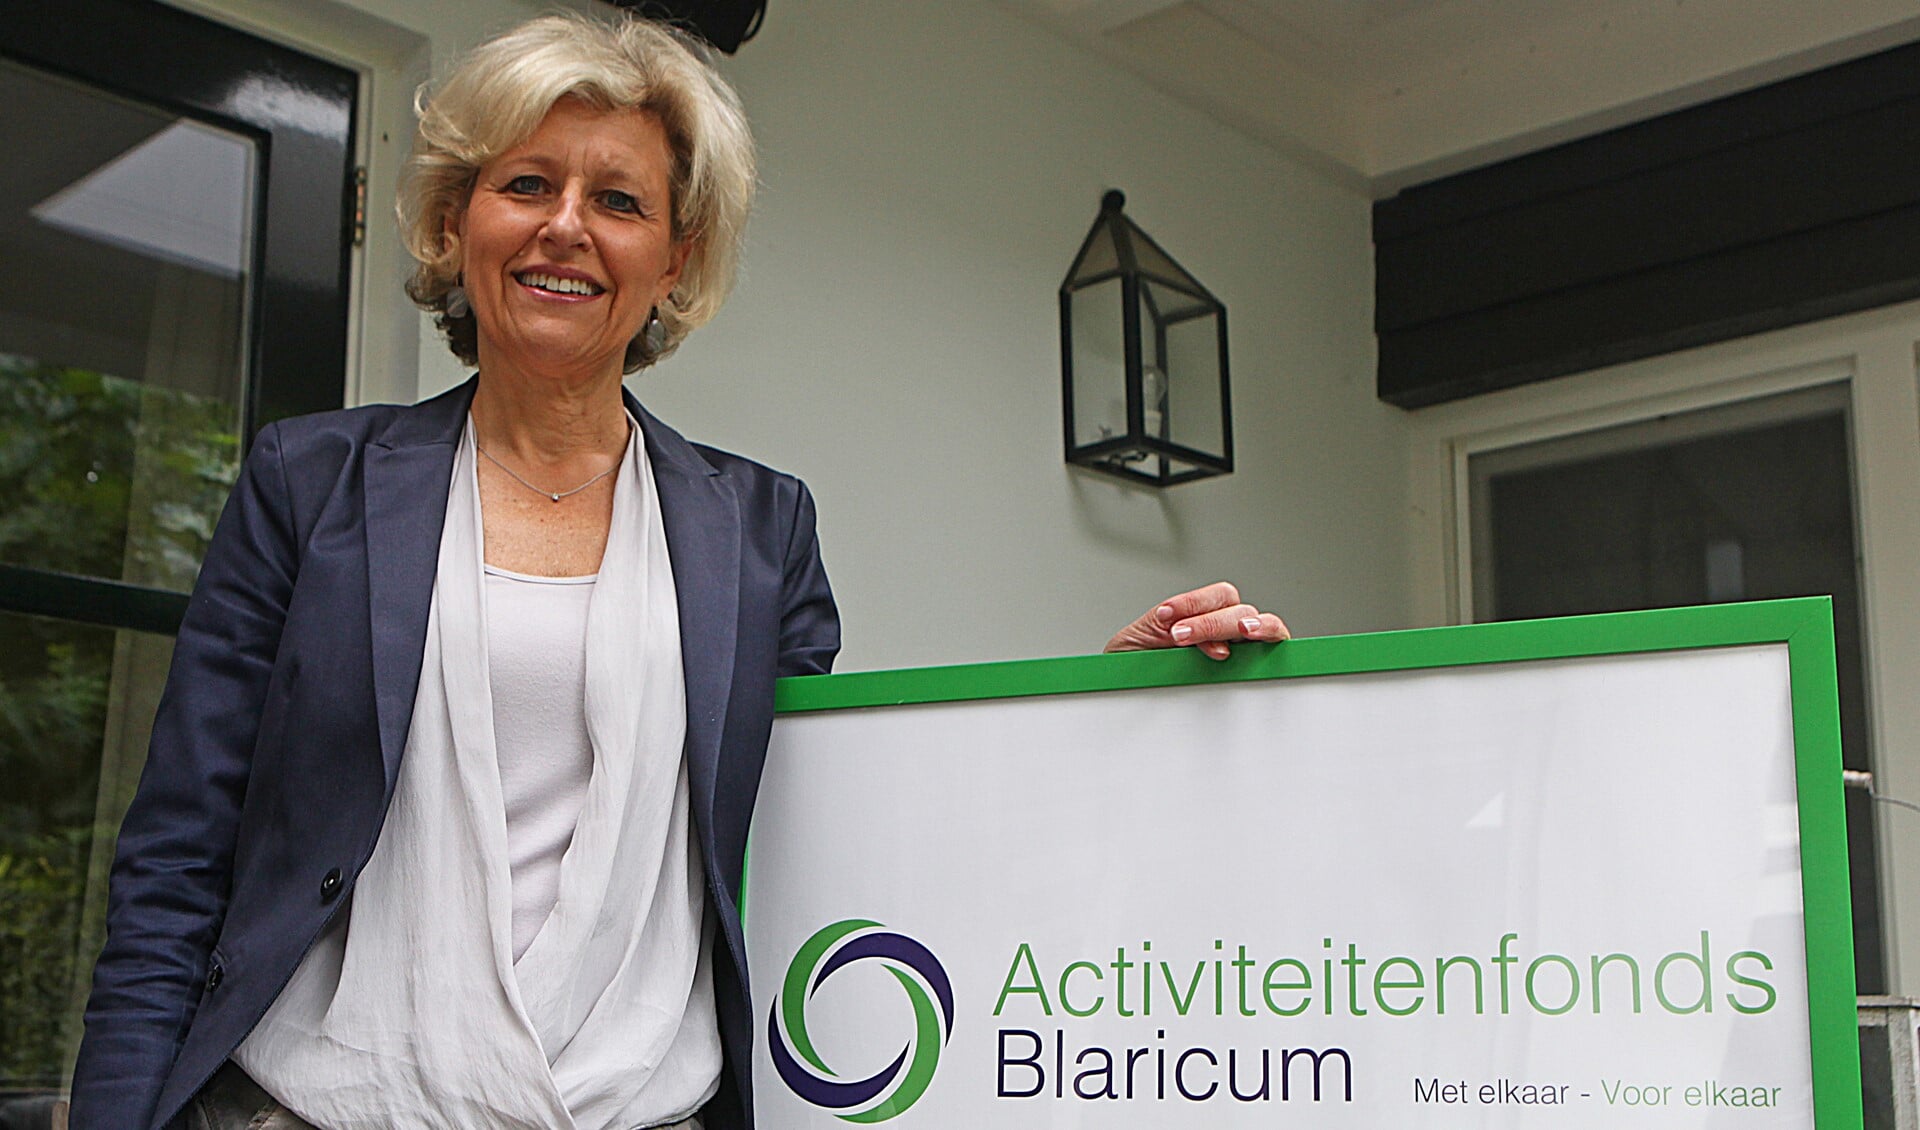 Voorzitter Mariette Gillis is trots op de nieuwe naam van het Activiteitenfonds Blaricum.